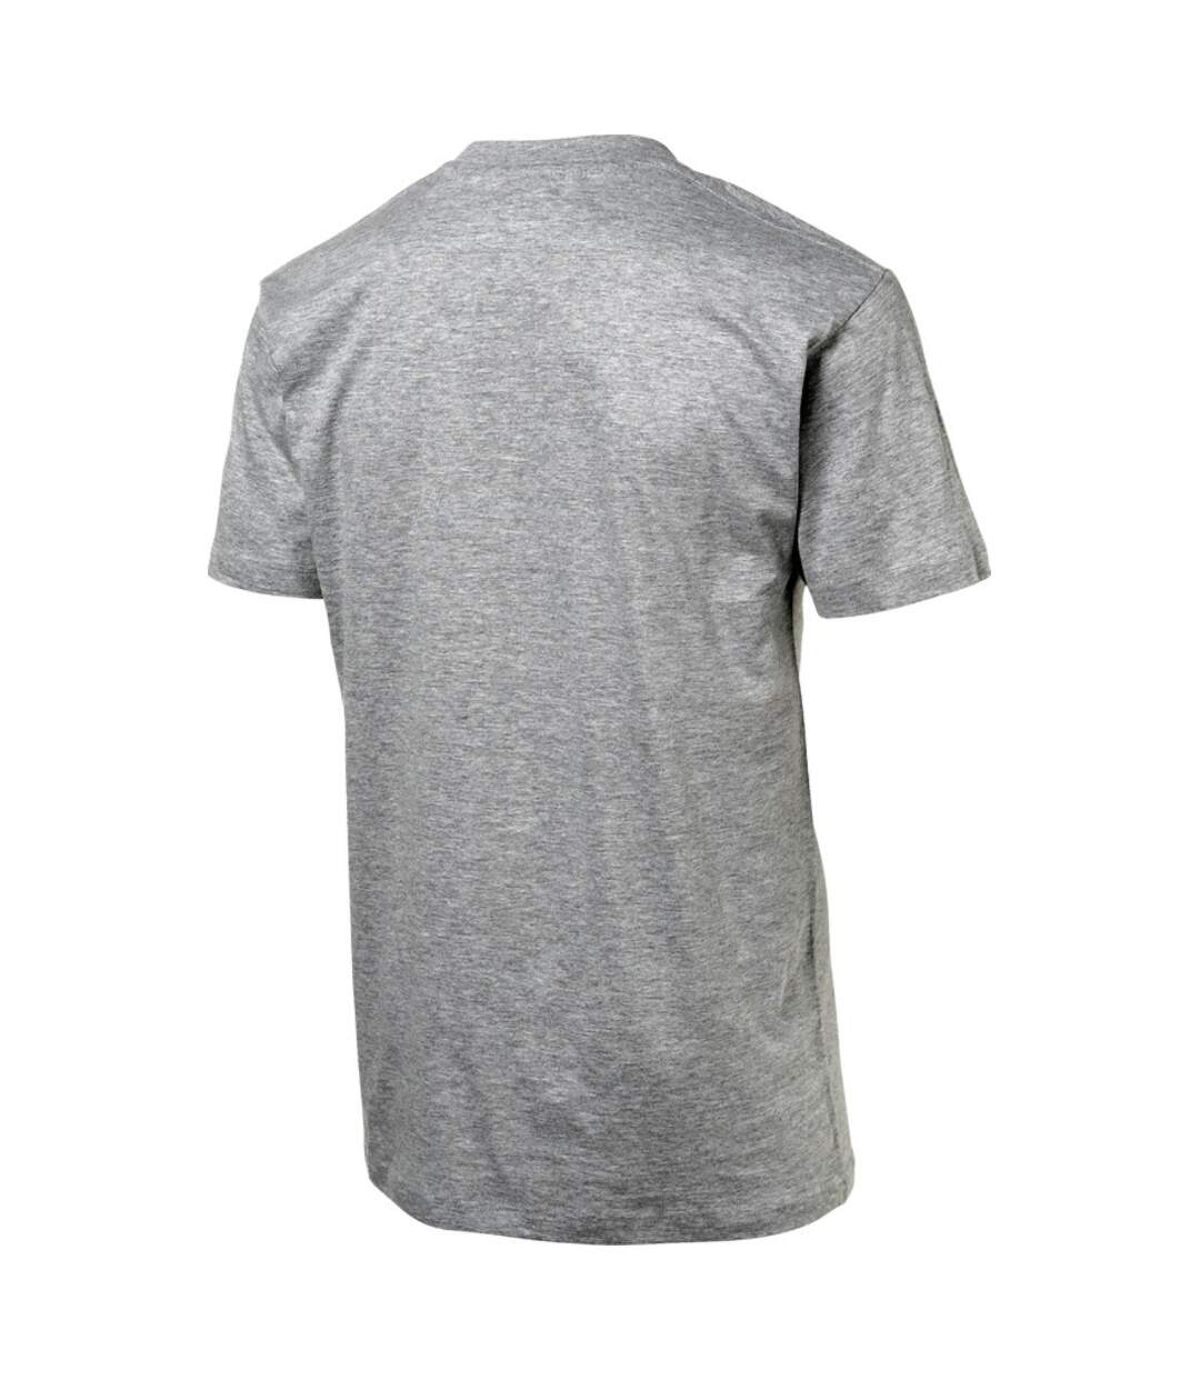 Slazenger Mens Ace Short Sleeve T-Shirt (Sport Grey) - UTPF1802